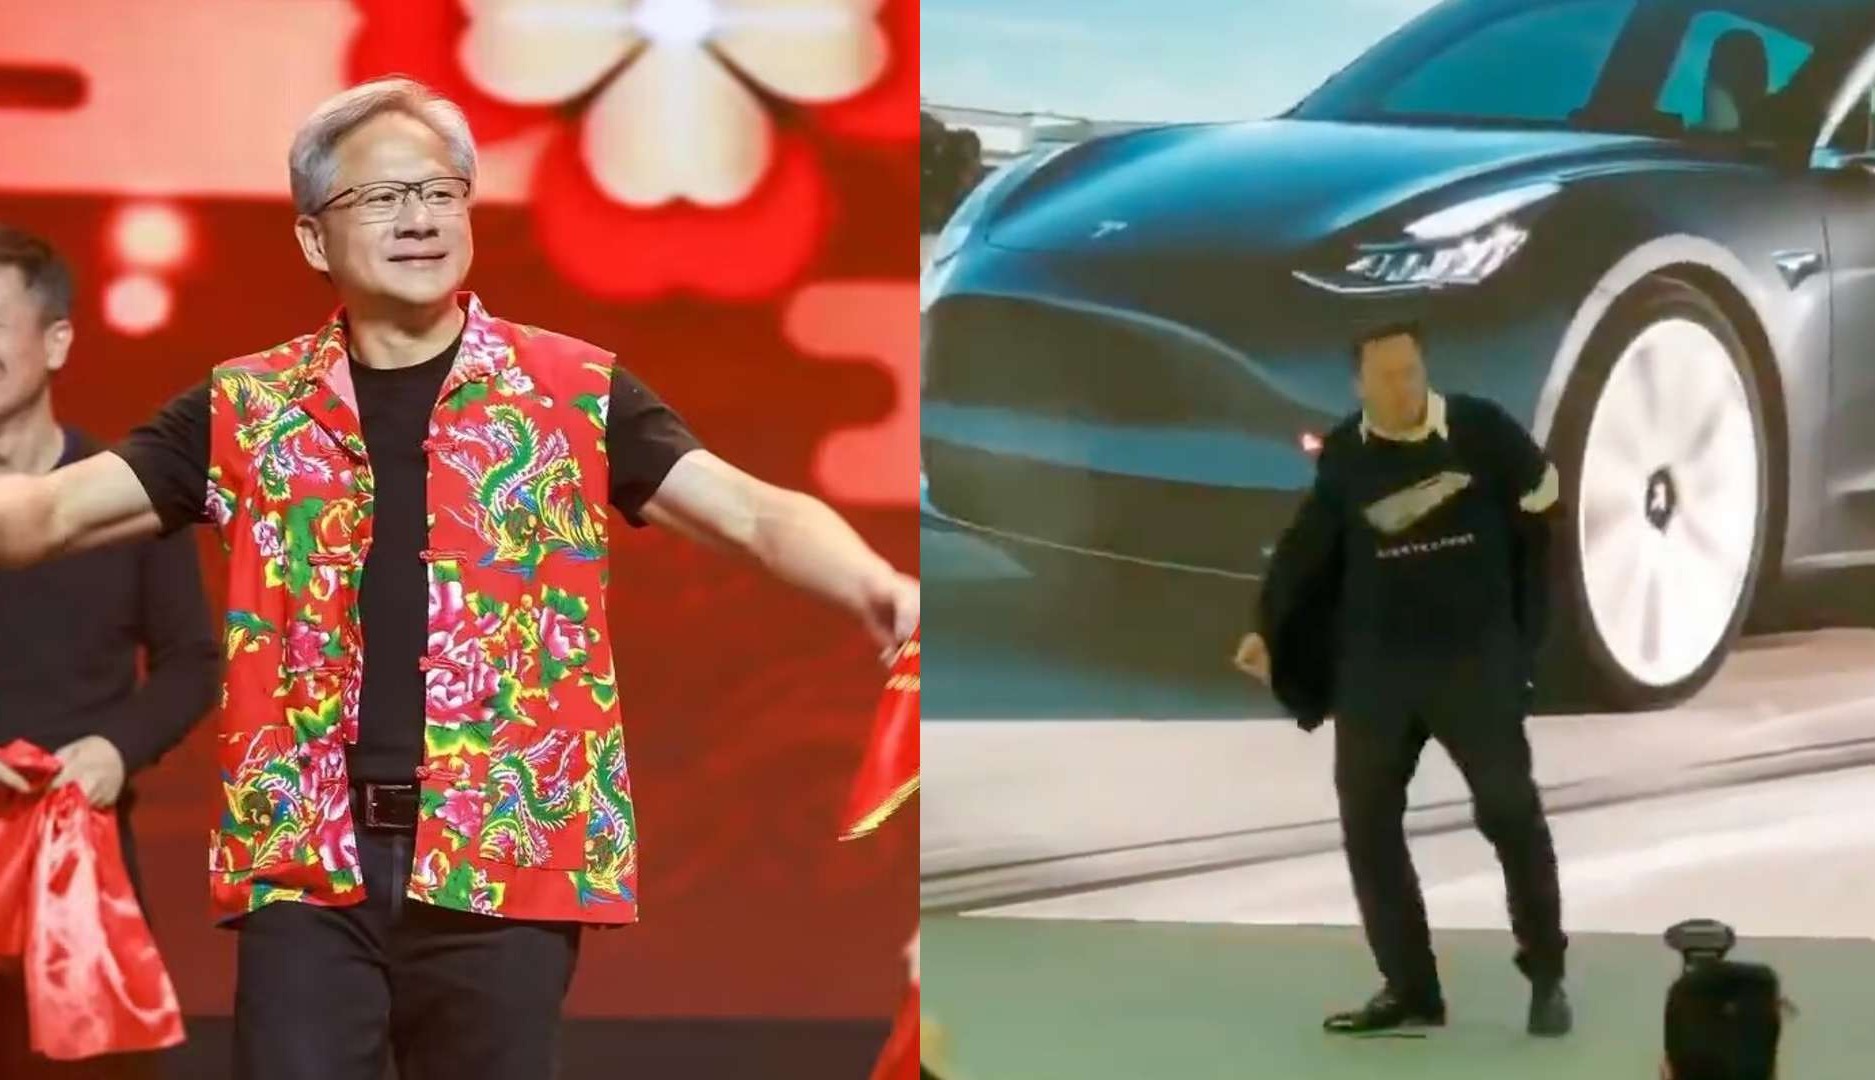 Jesen Huan y Elon Musk bailando